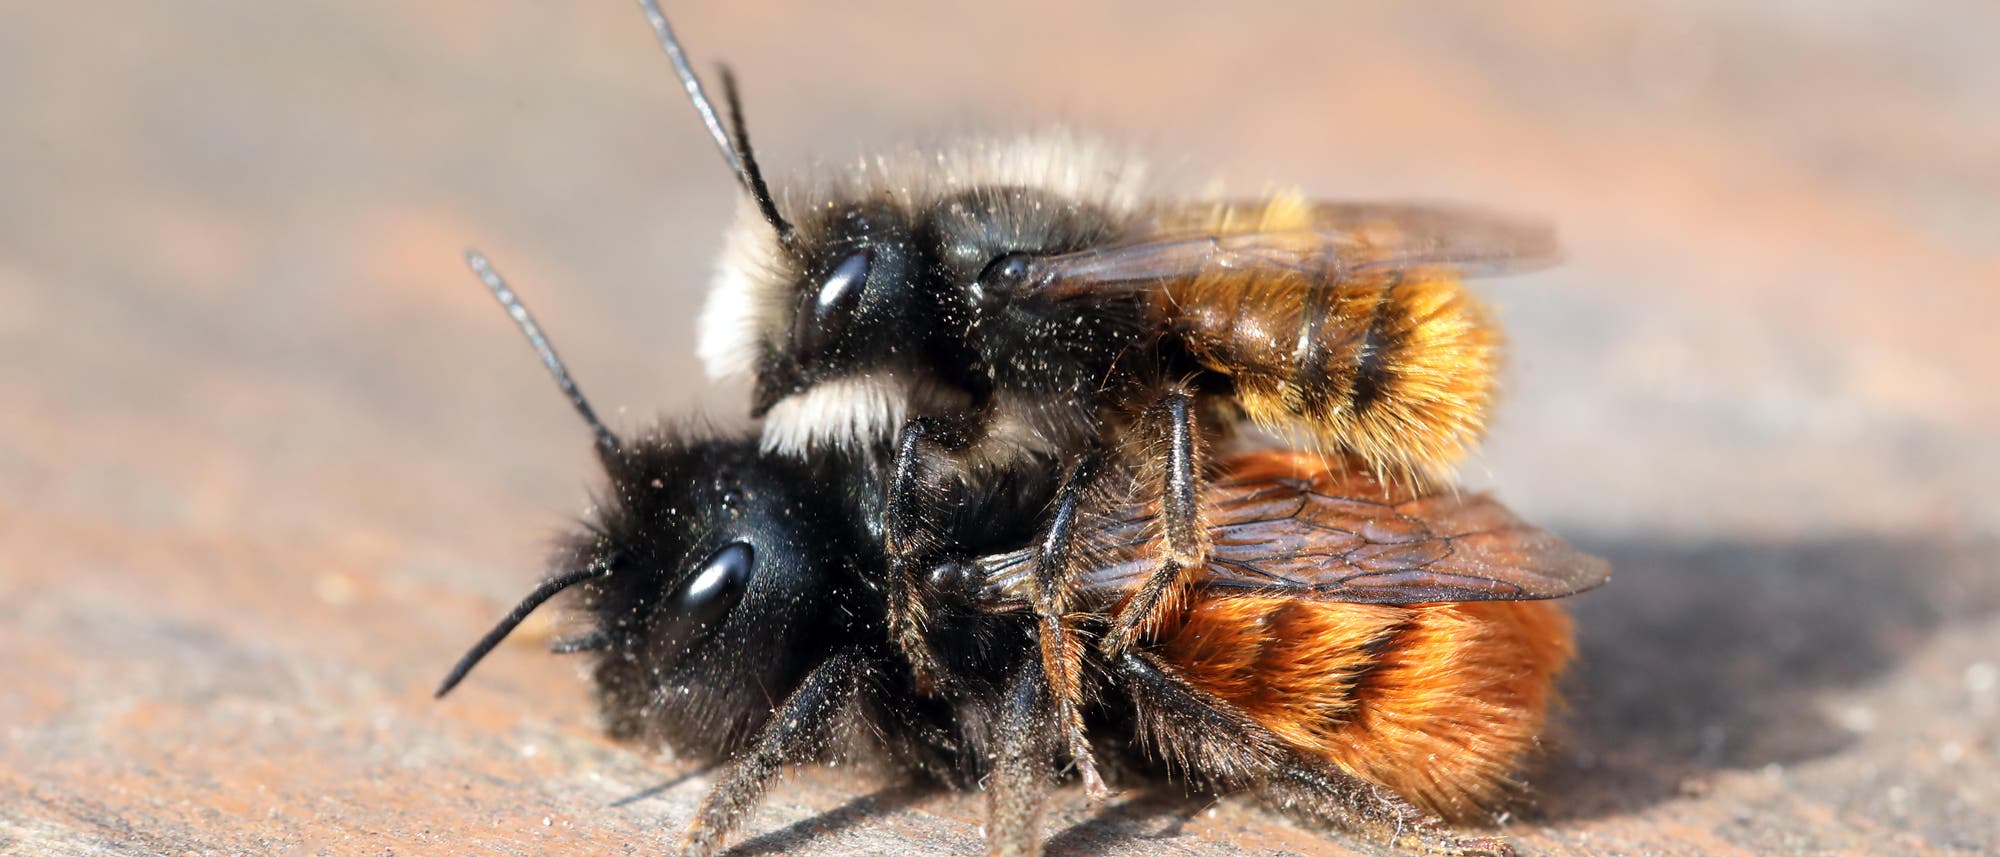 Eine männliche Gehörnte Mauerbiene sitzt auf einem Weibchen. Das Männchen hat gelbliche Haare am Hinterteil und weiße Haare am Kopf. Das Weibchen ist größer, hat einen schwarzen Vorderkörper und einen orange gefärbten Hinterleib. Beide sitzen auf Holz